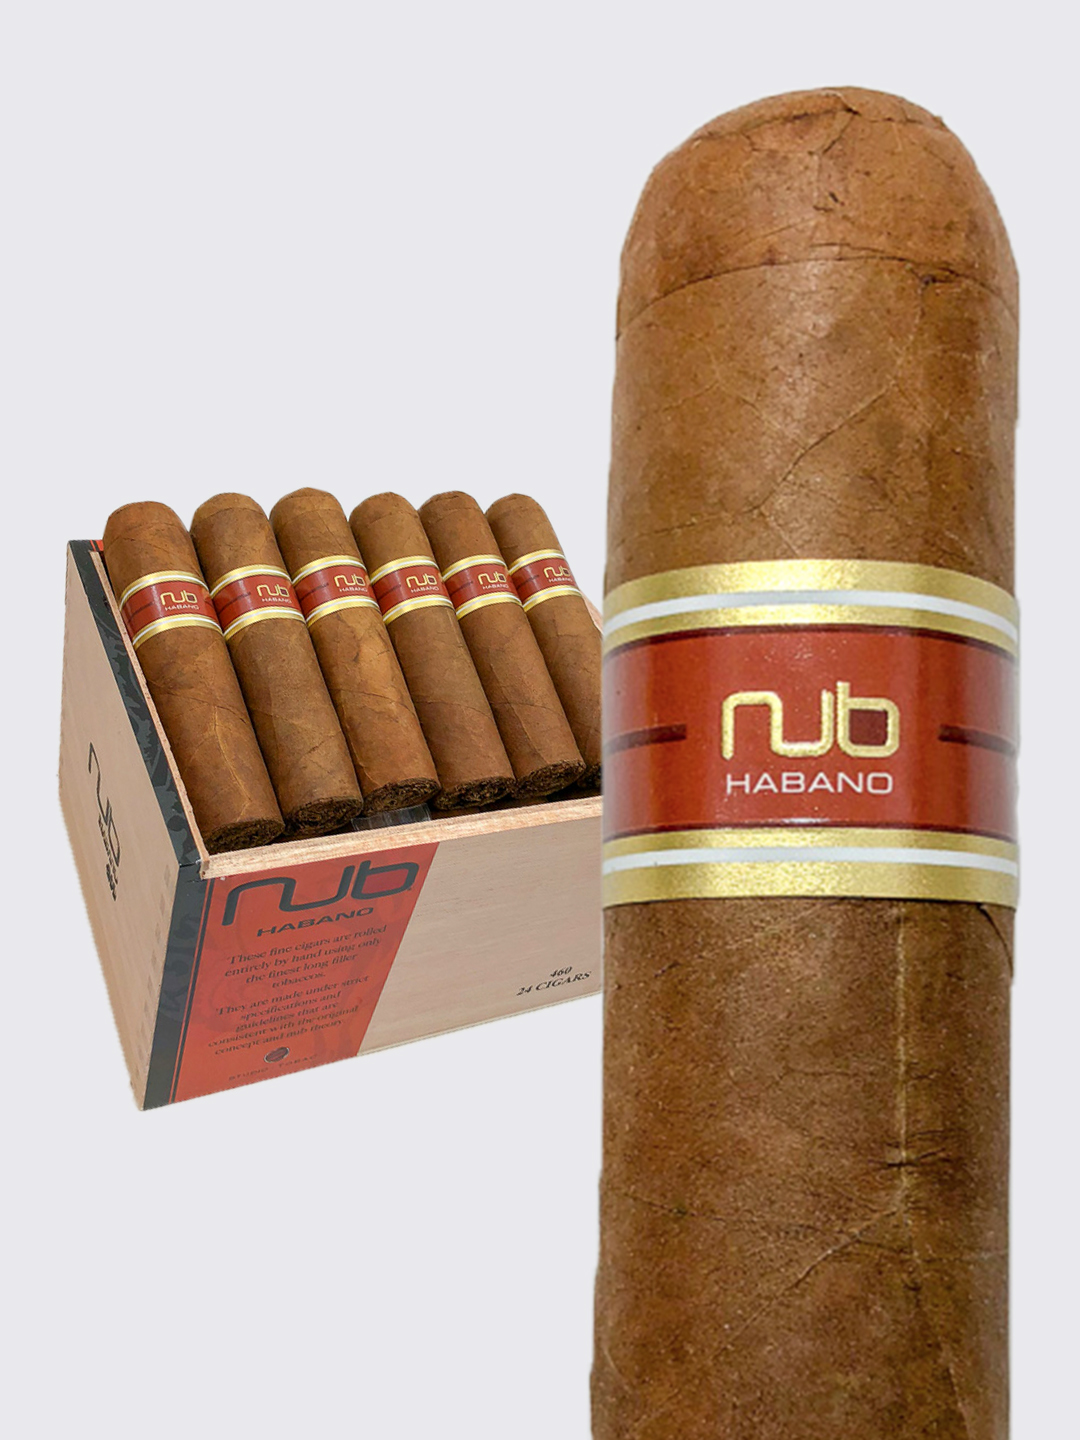 https://cigarsdaily.com/wp-content/uploads/2018/02/nub-habano-460-Product-image.jpg